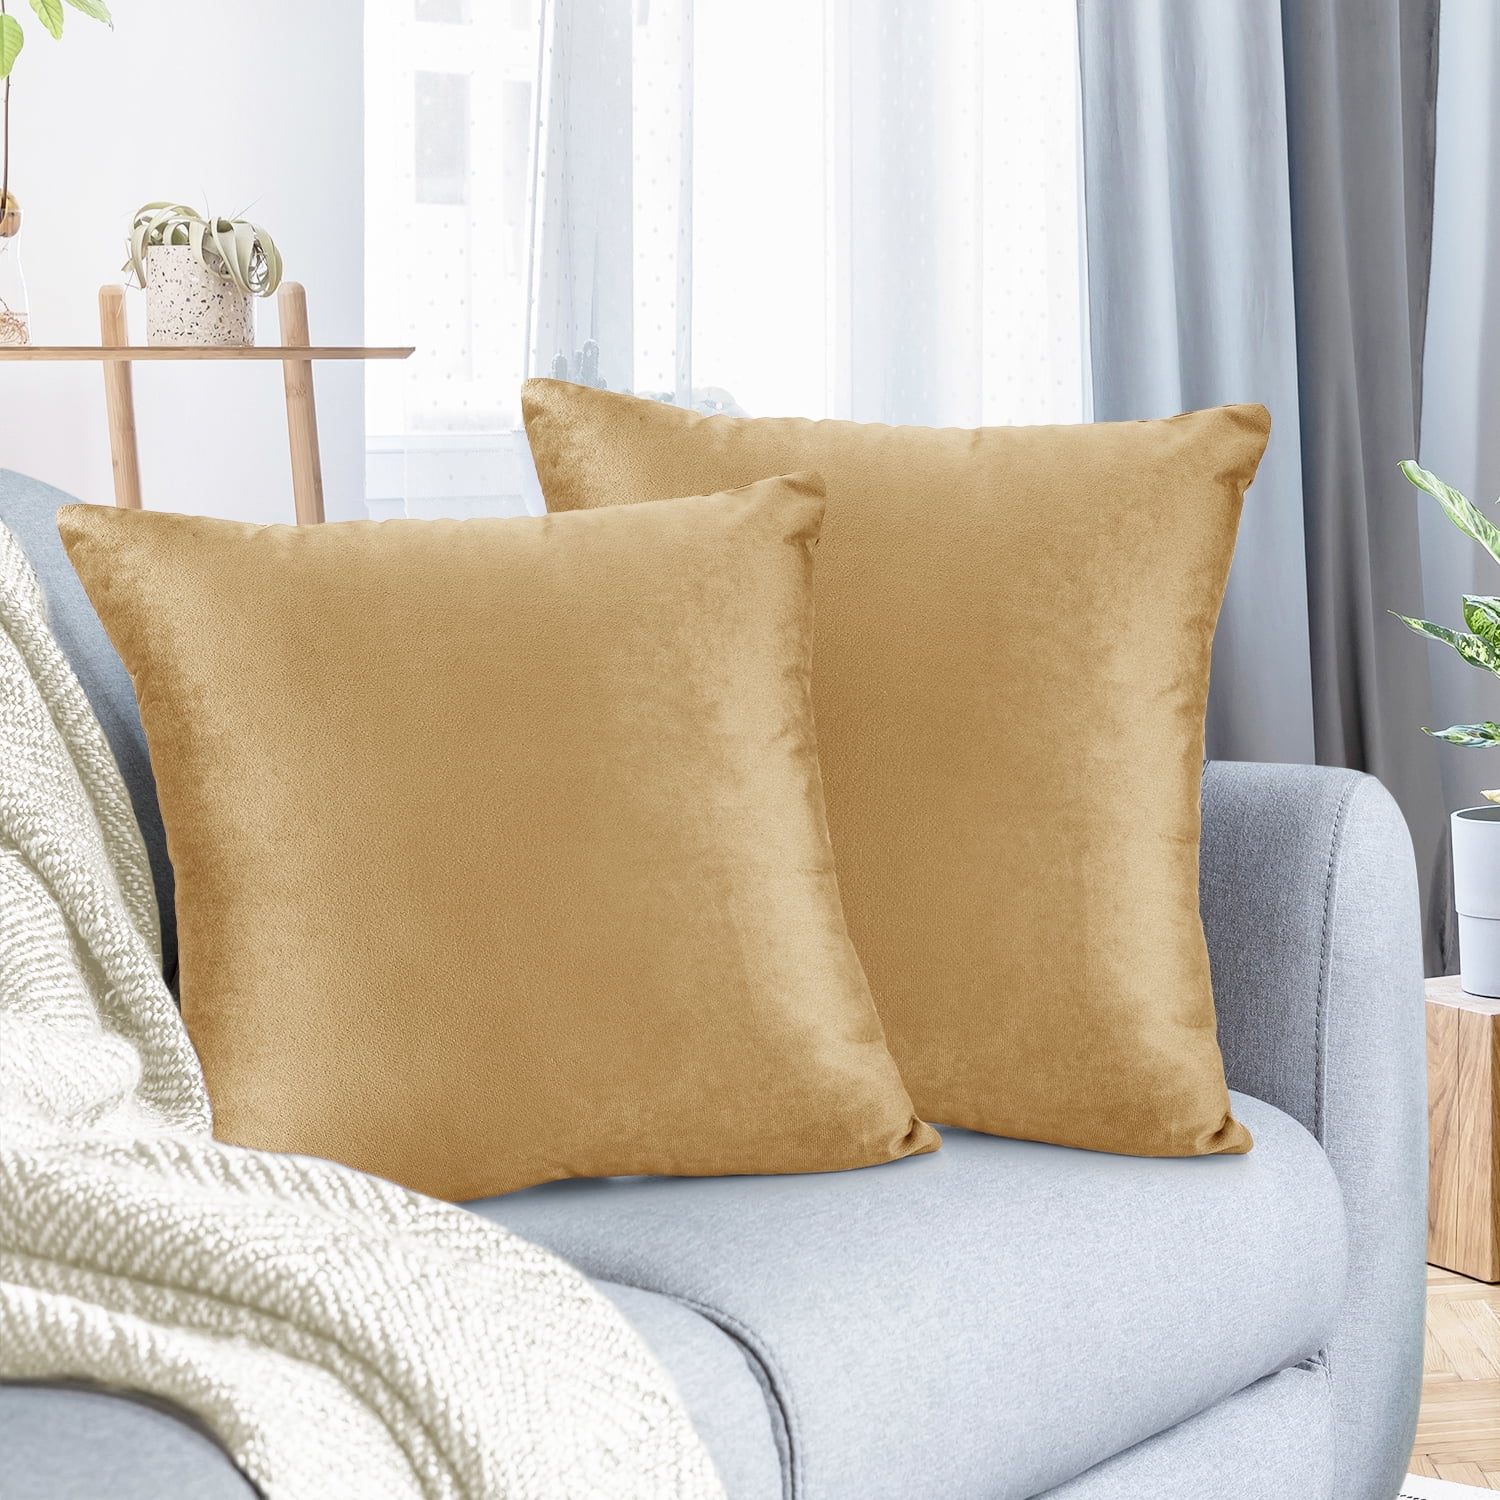 18'' Pillowcase purple pillow case sofa waist throw cushion cover Home Decor 